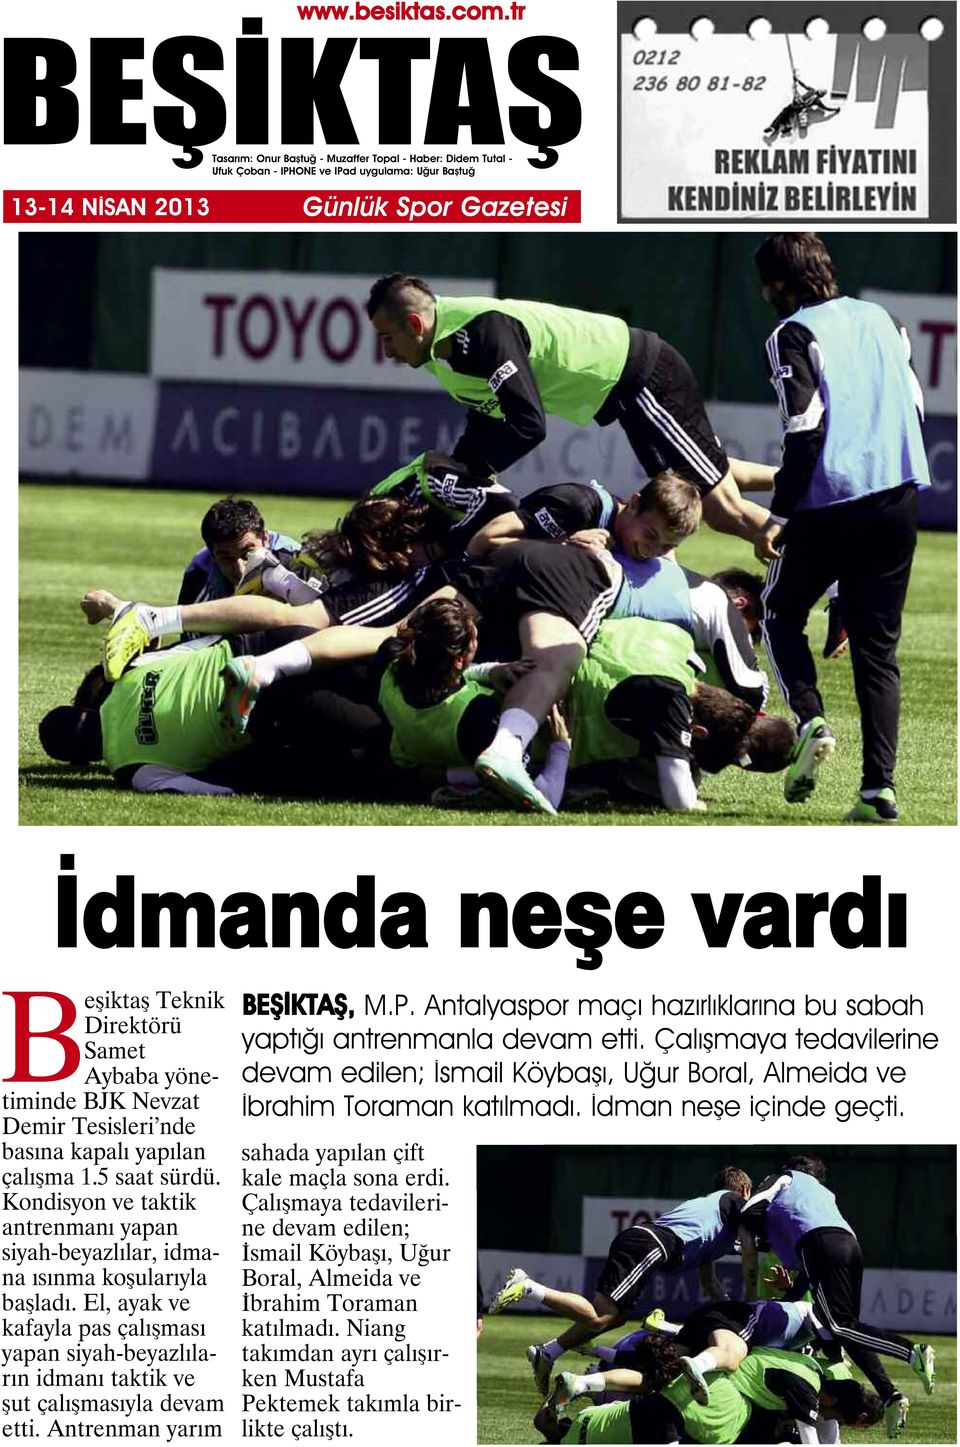 Antrenman yarım, M.P. Antalyaspor maçı hazırlıklarına bu sabah yaptığı antrenmanla devam etti. Çalışmaya tedavilerine devam edilen; İsmail Köybaşı, Uğur Boral, Almeida ve İbrahim Toraman katılmadı.